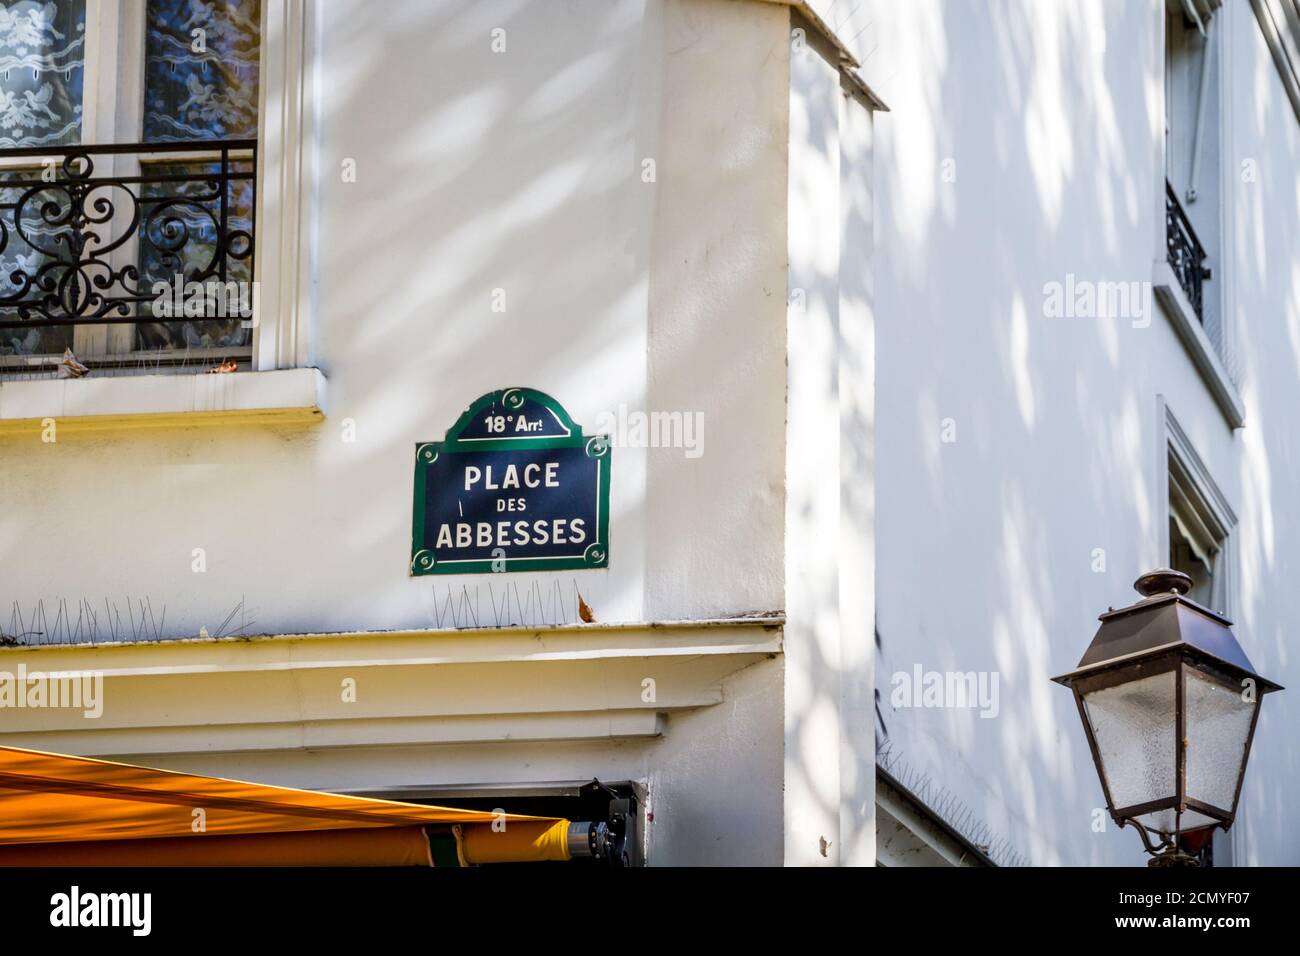 Place des Abbesses street sign, Paris, France Stock Photo